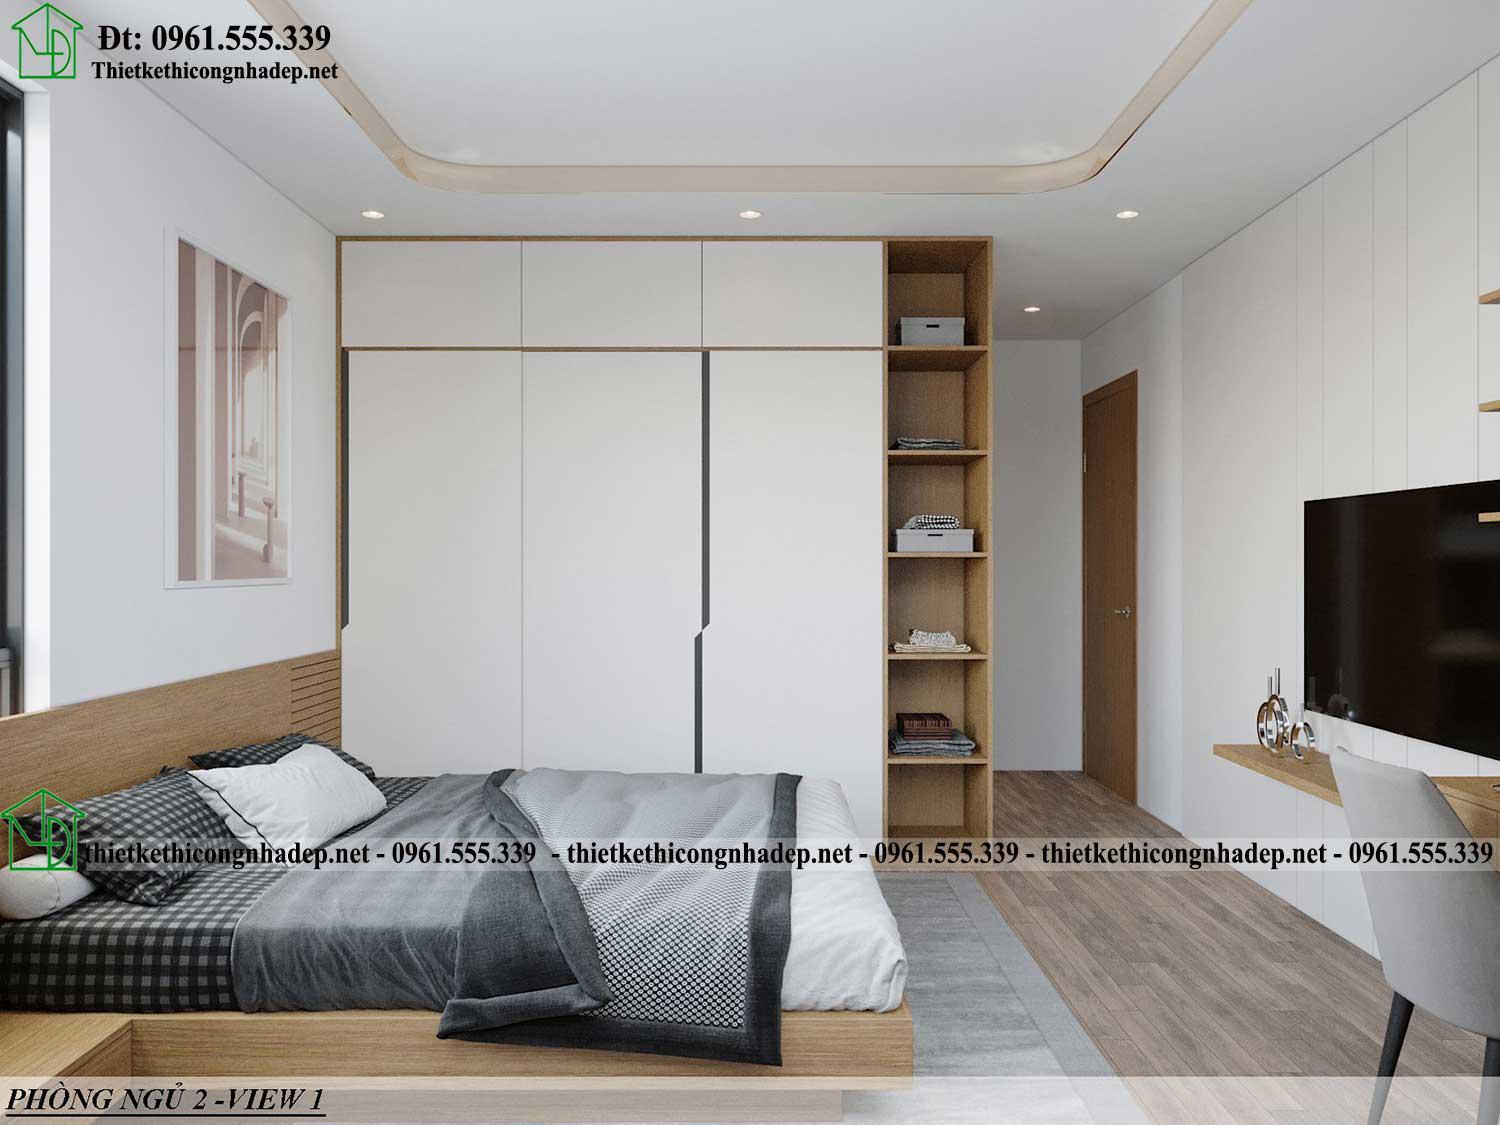 Thiết kế nội thất phòng ngủ số 2 hiện đại NDCC71